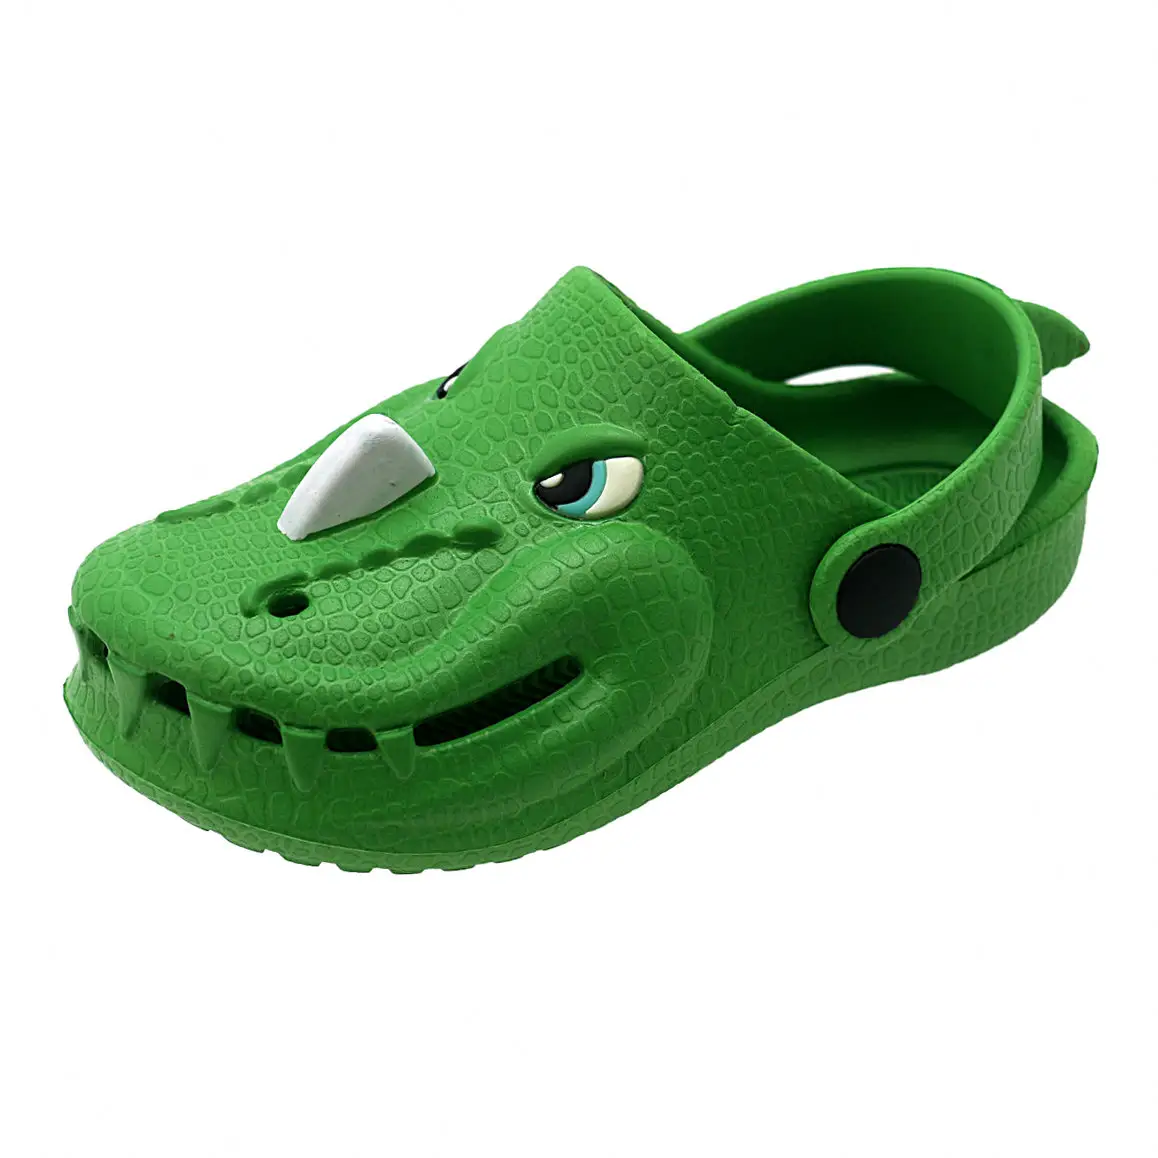 Enfants été EVA sabots chaussures Crocodile forme enfants plage plat pantoufles garçons filles pantoufles plage sandales chaussures